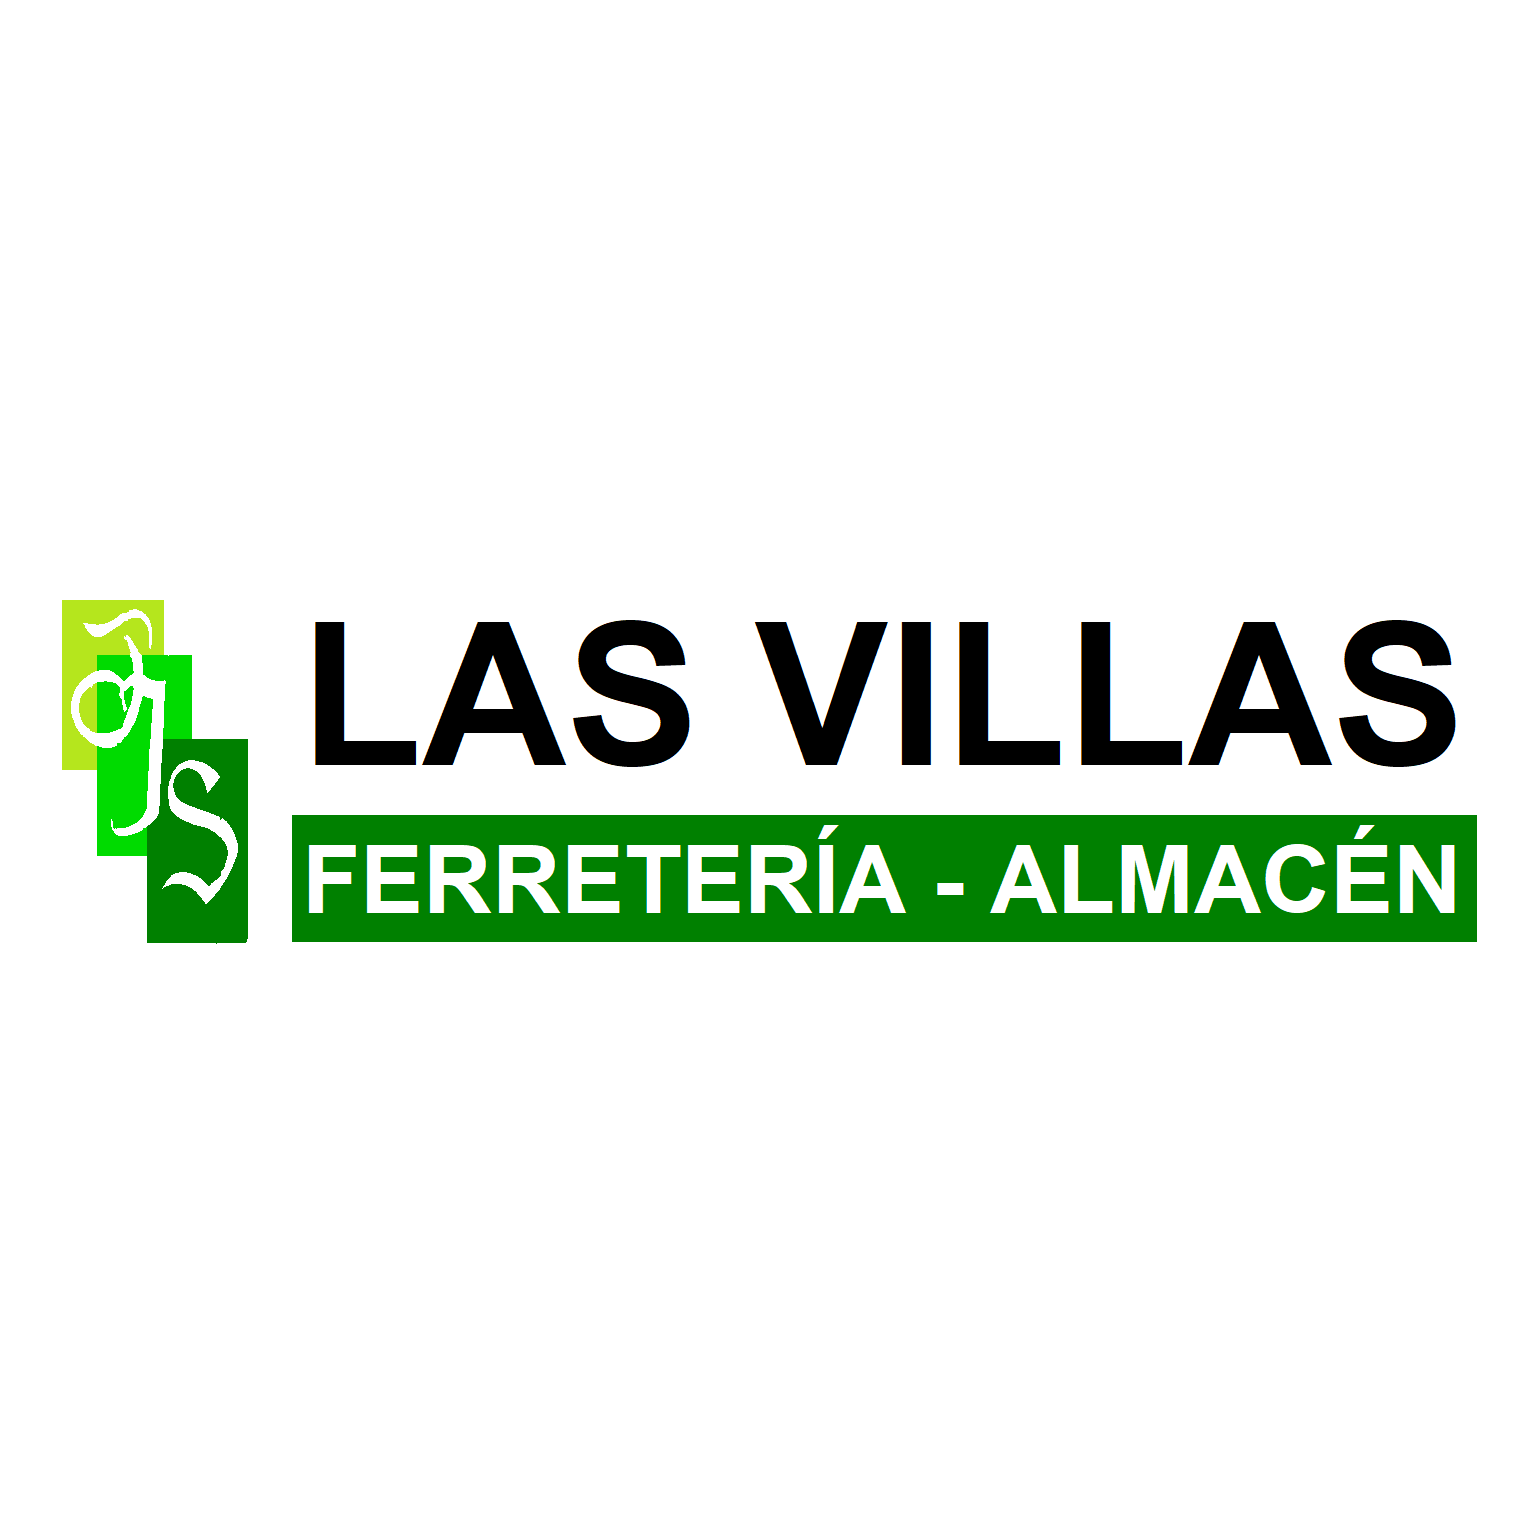 Ferretería-Almacén TJS Las Villas Villoria